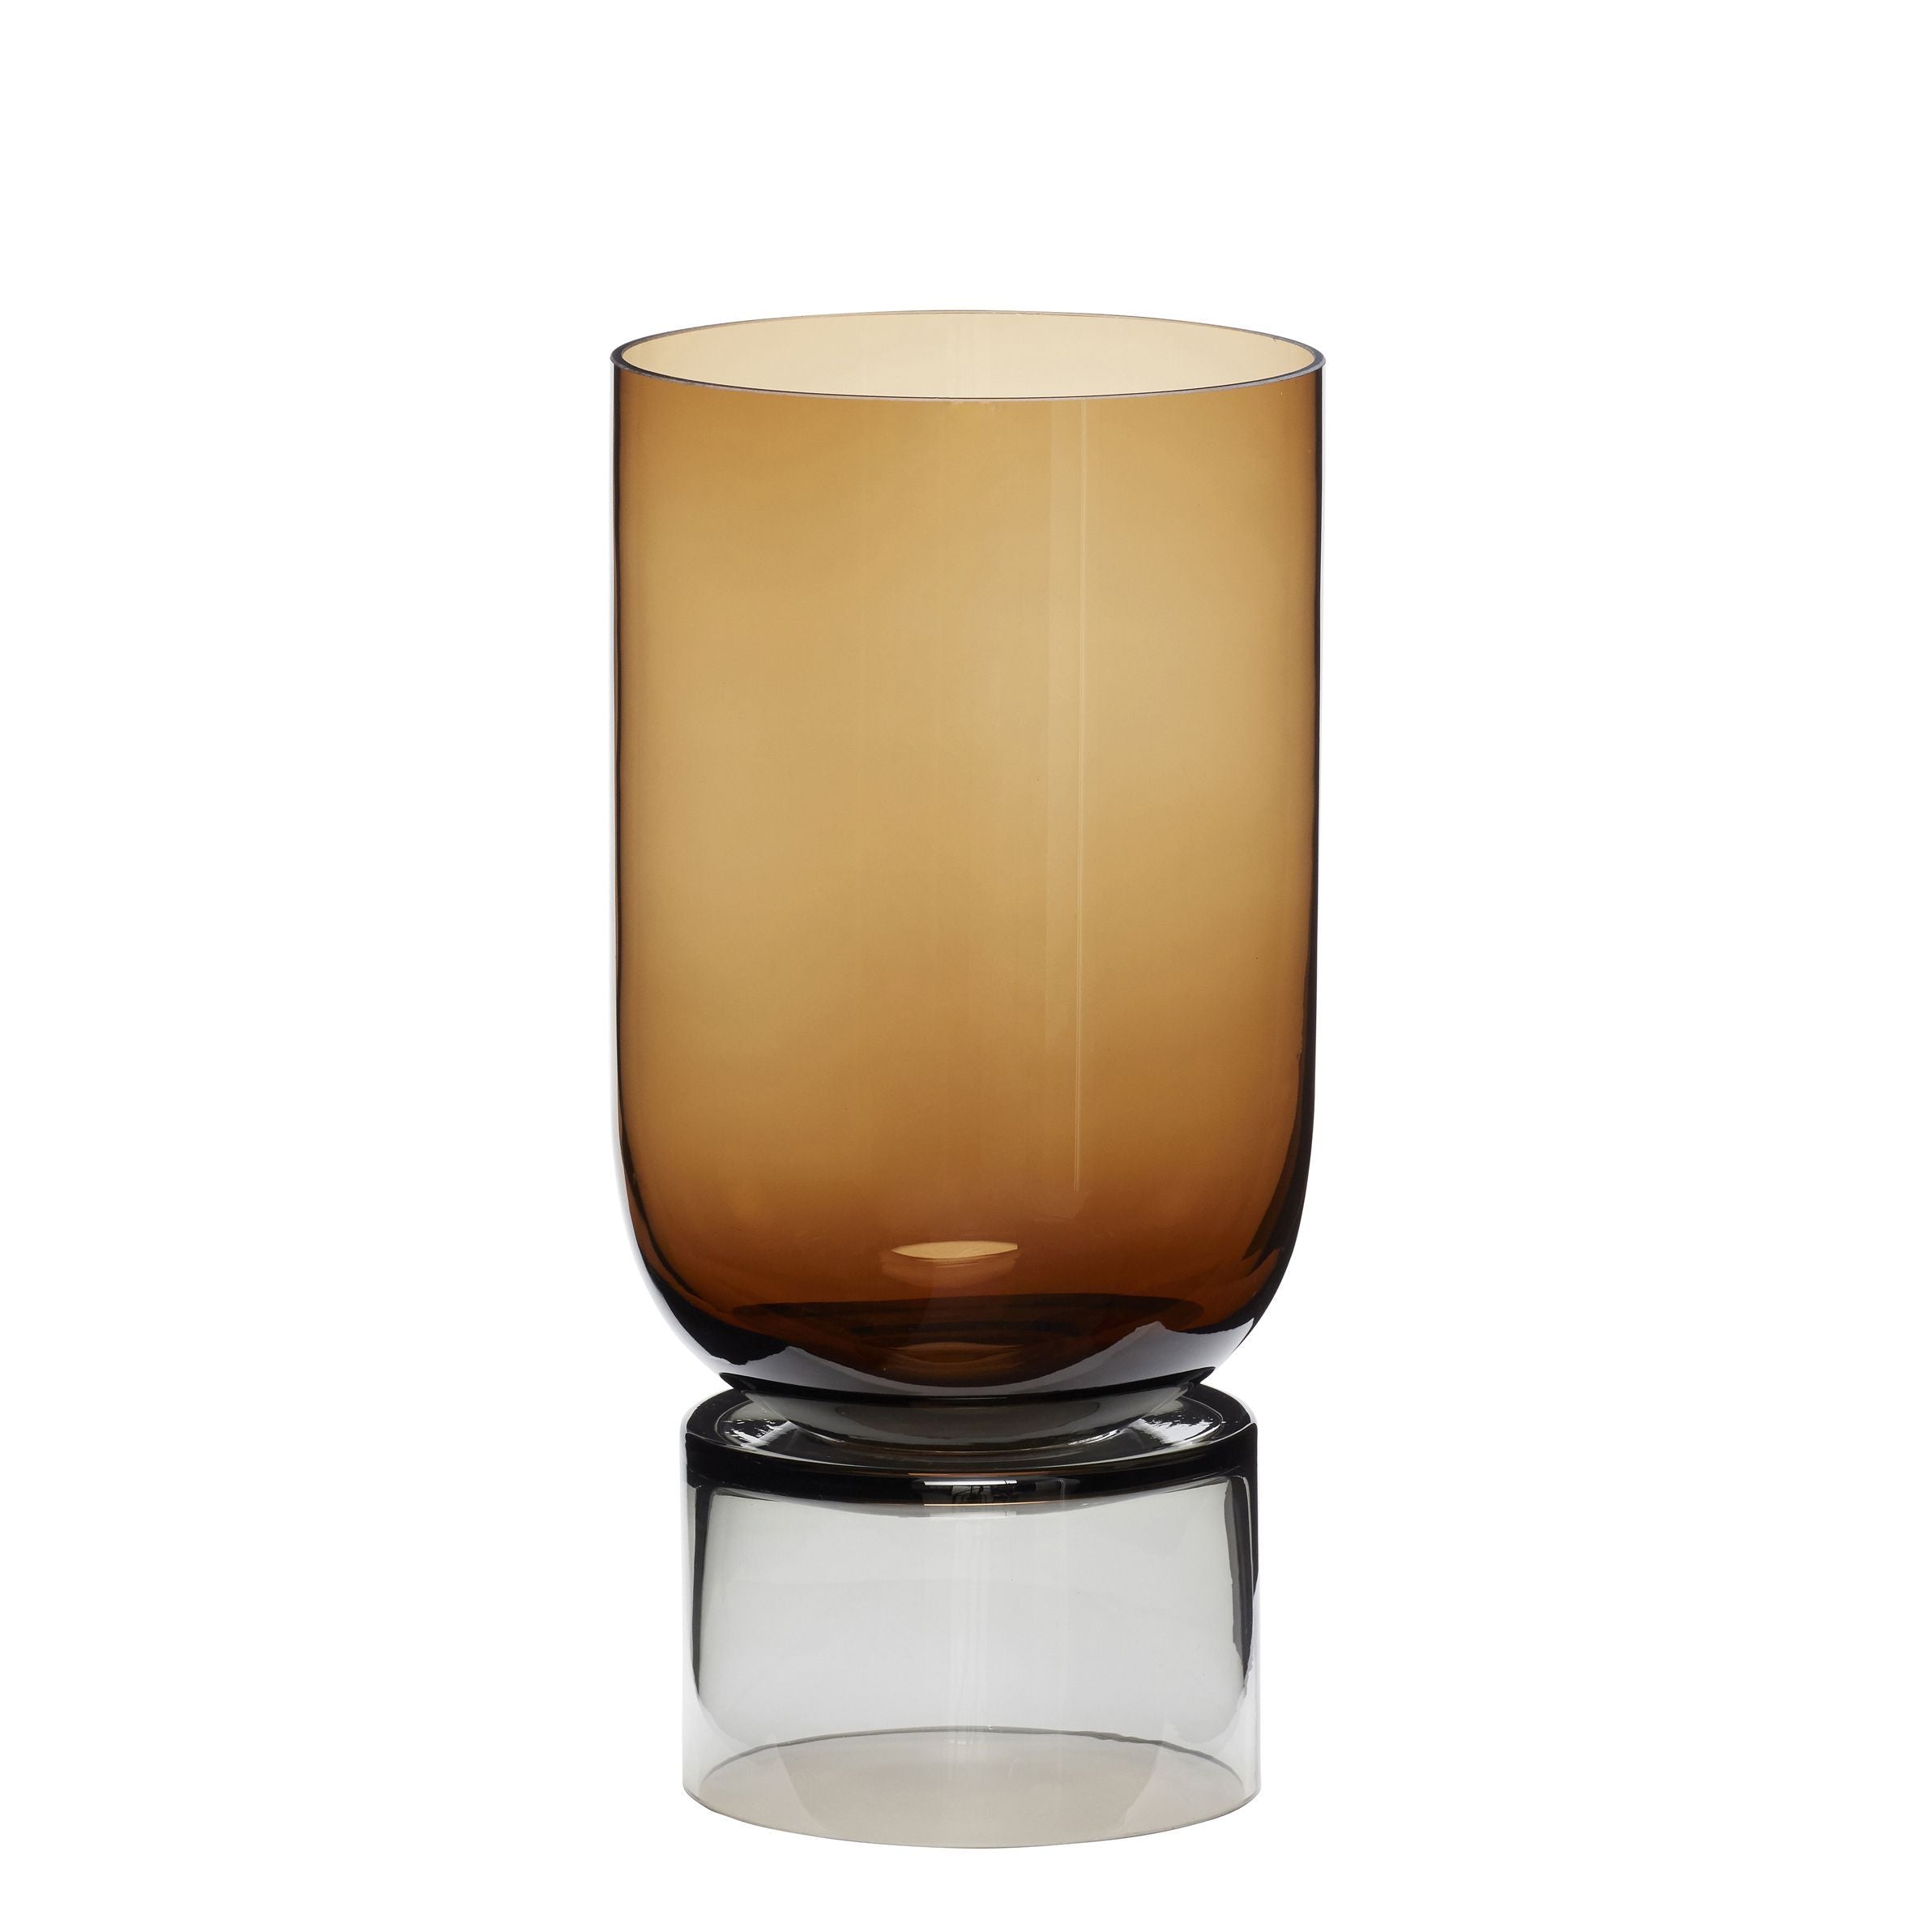 Hübsch Stand wazon ręcznie robiono szklany bursztyn/szary, Øx H 16x32 cm